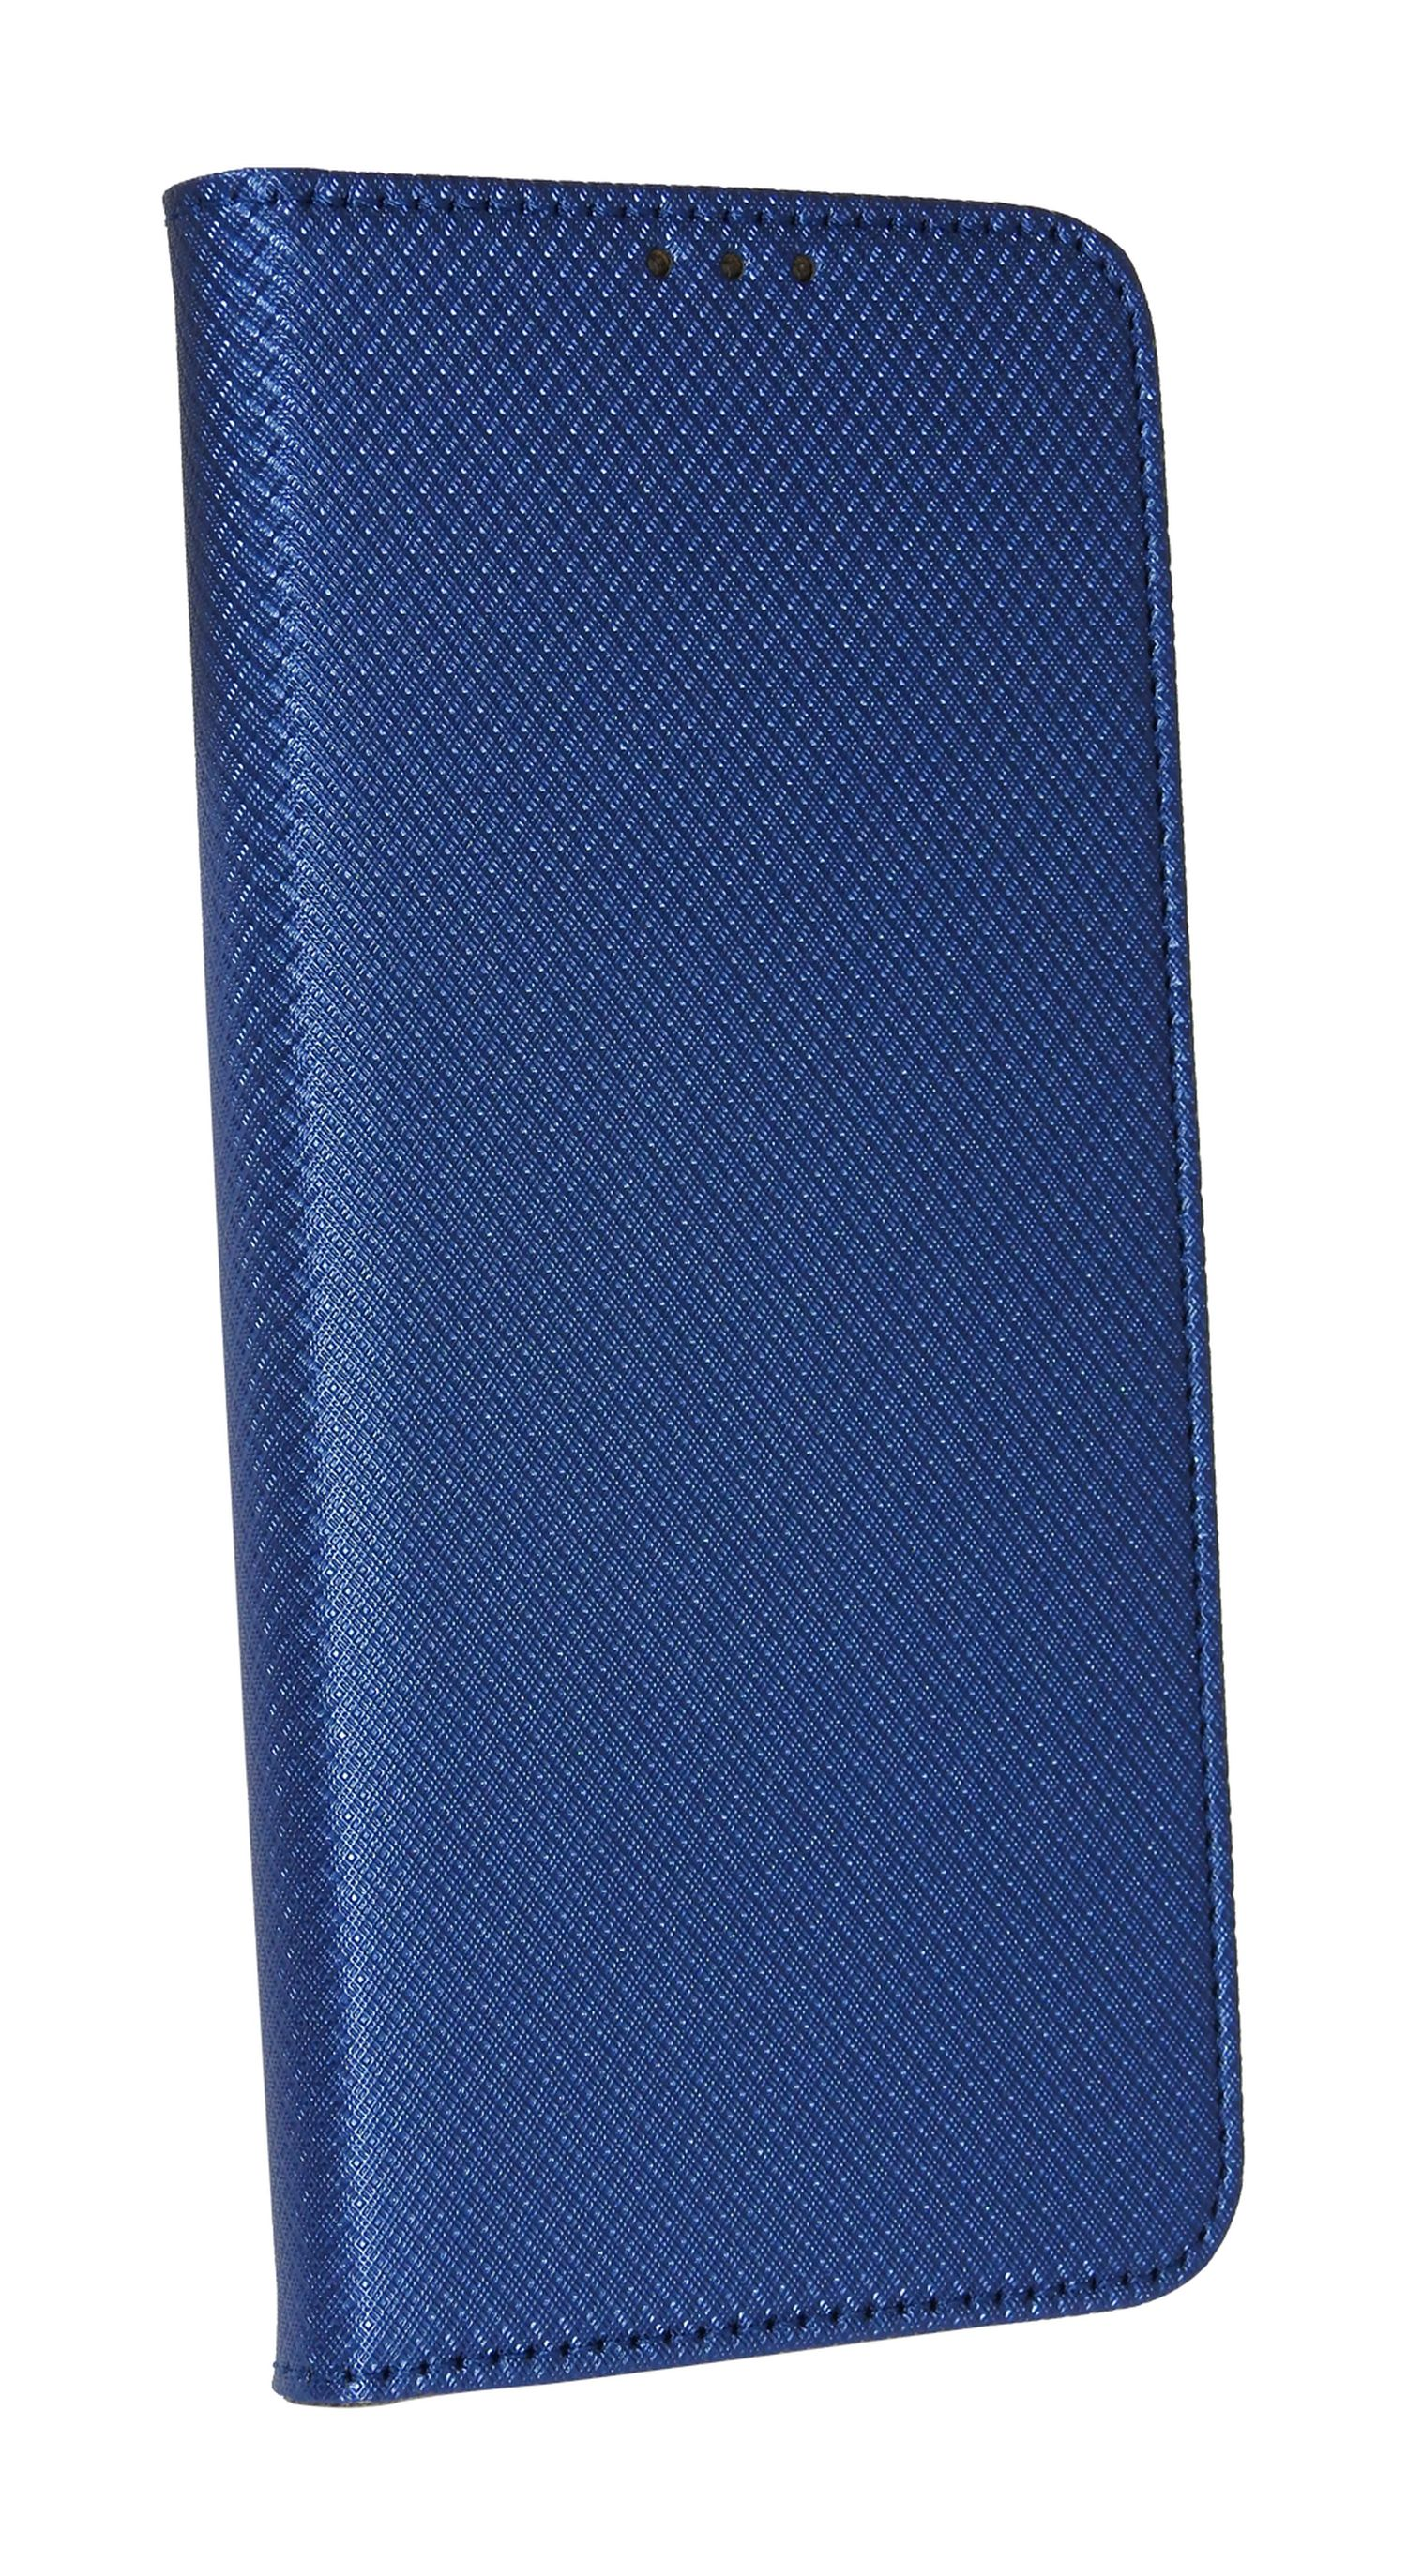 A04s, Galaxy COFI Blau Bookcover, Samsung, Tasche, Buch